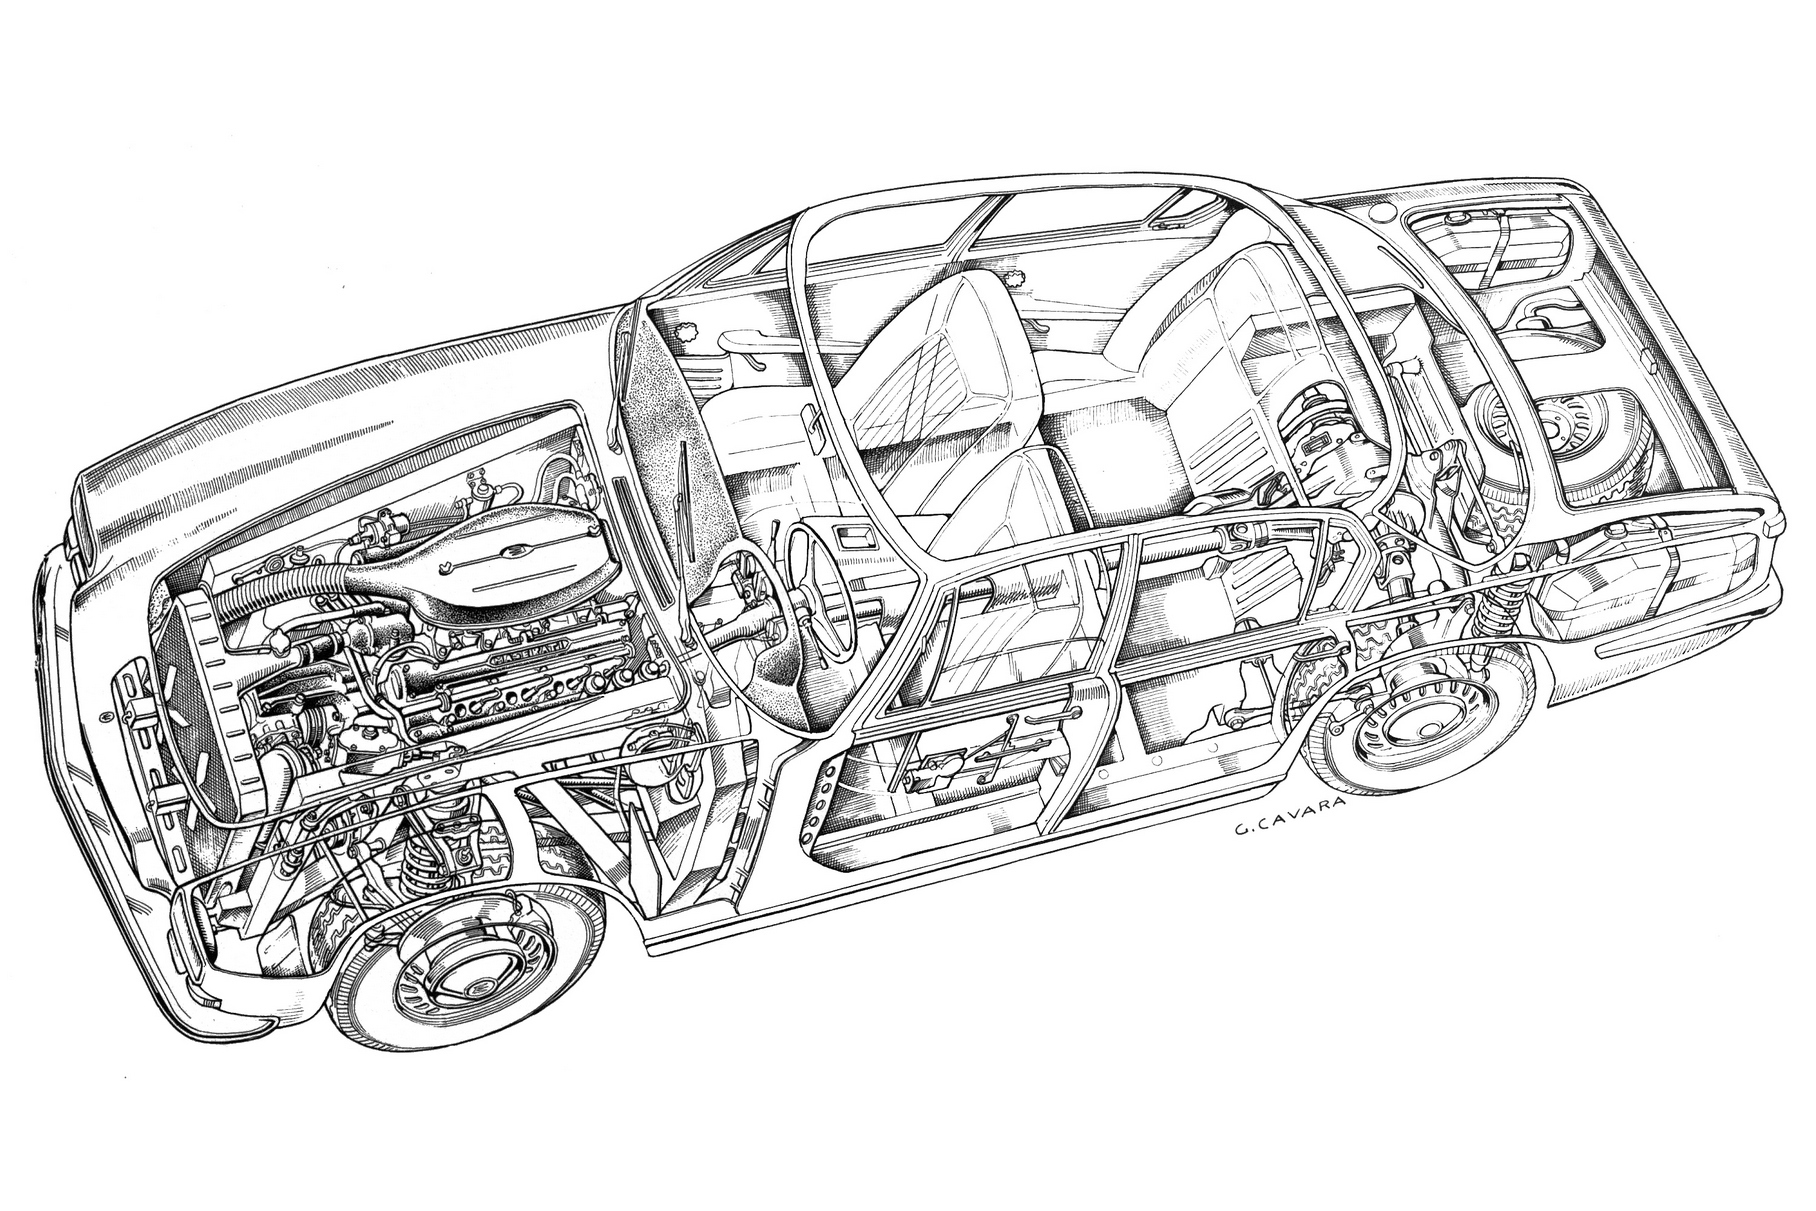 Шасси автомобиля первой серии: хорошо видно зависимую пружинную подвеску типа «Де-Дион» сзади